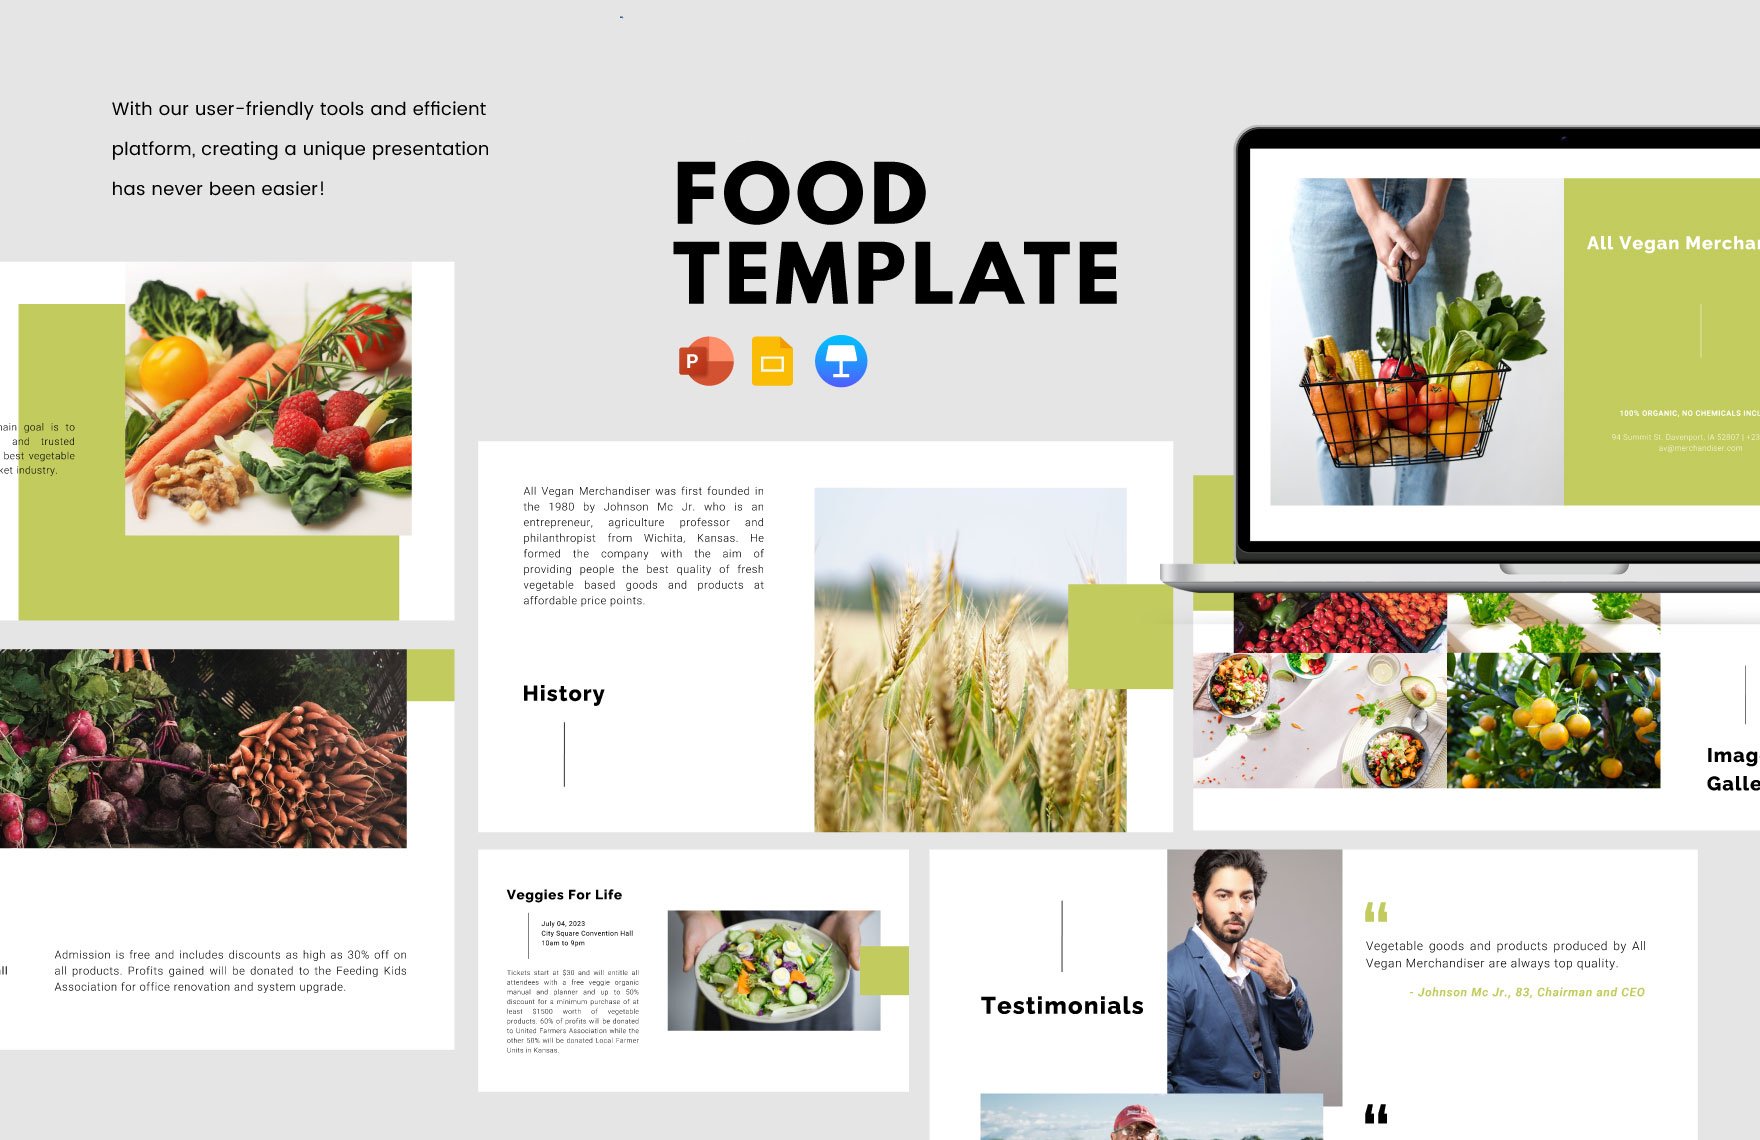 Food Template in PowerPoint, Google Slides, Apple Keynote